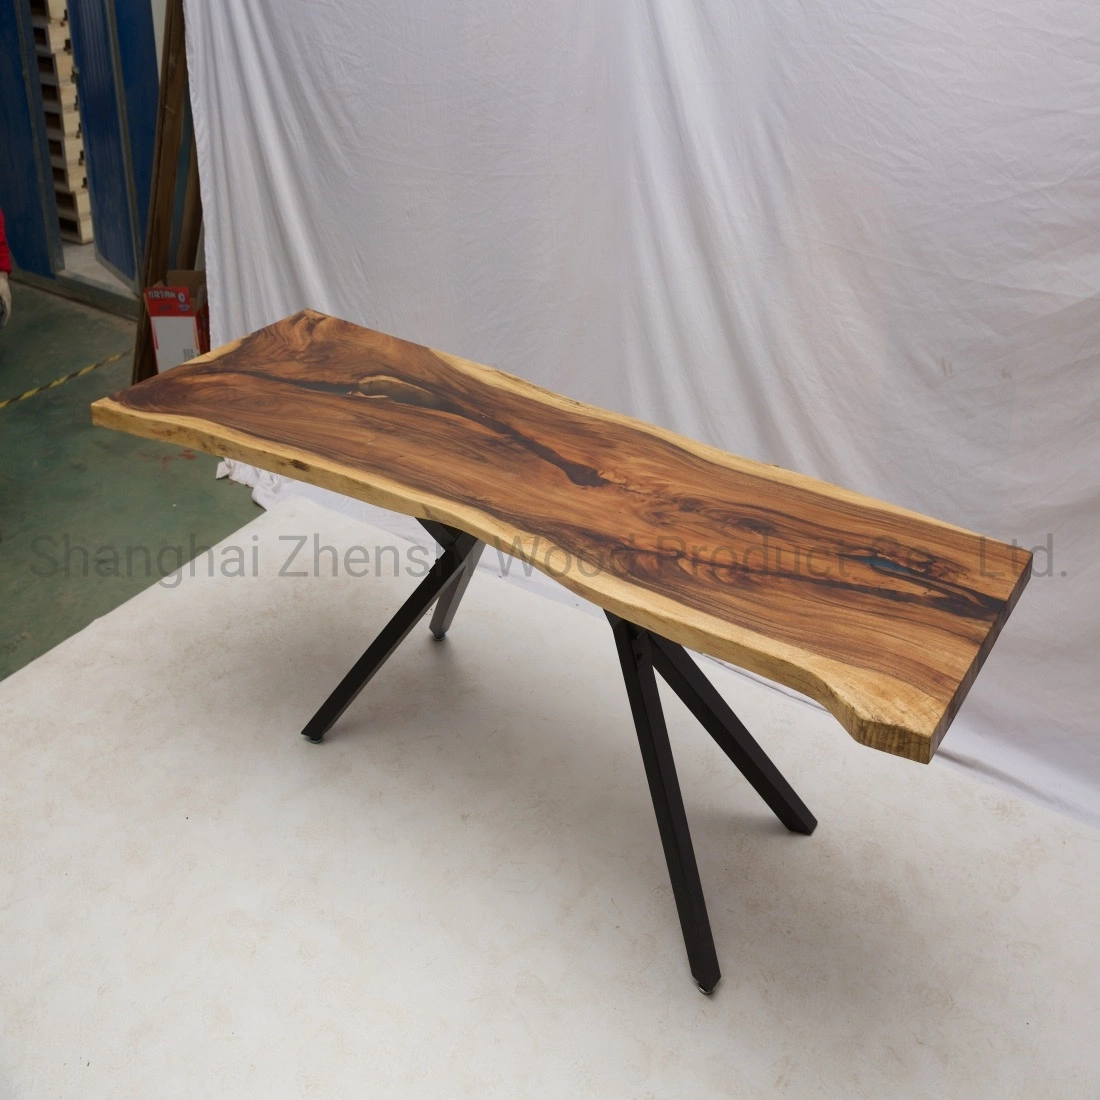 Extremo en vivo de la madera de mesa mesa